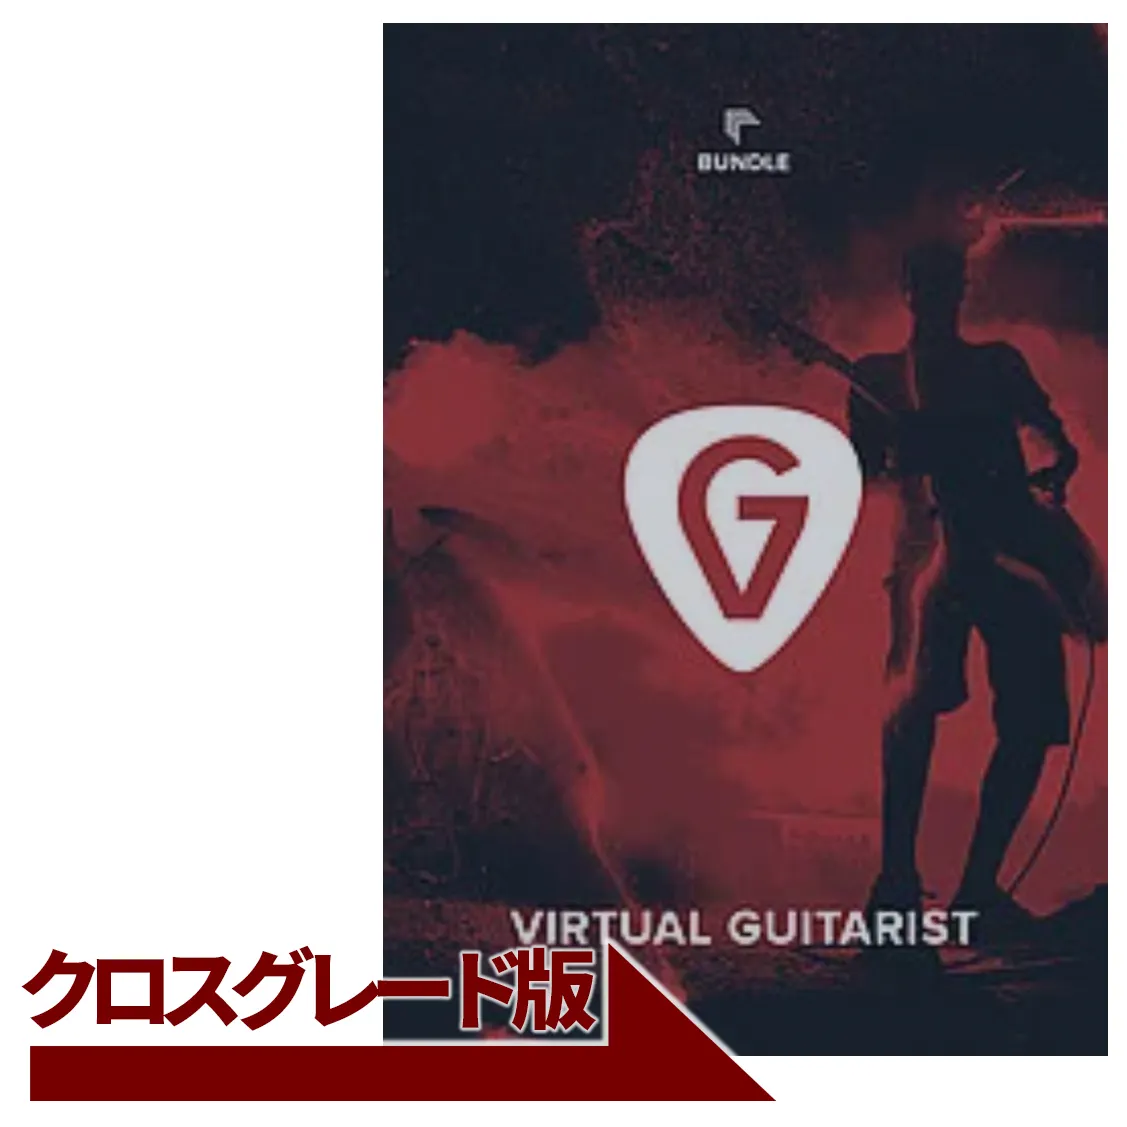 Virtual Guitarist Bundle クロスグレード